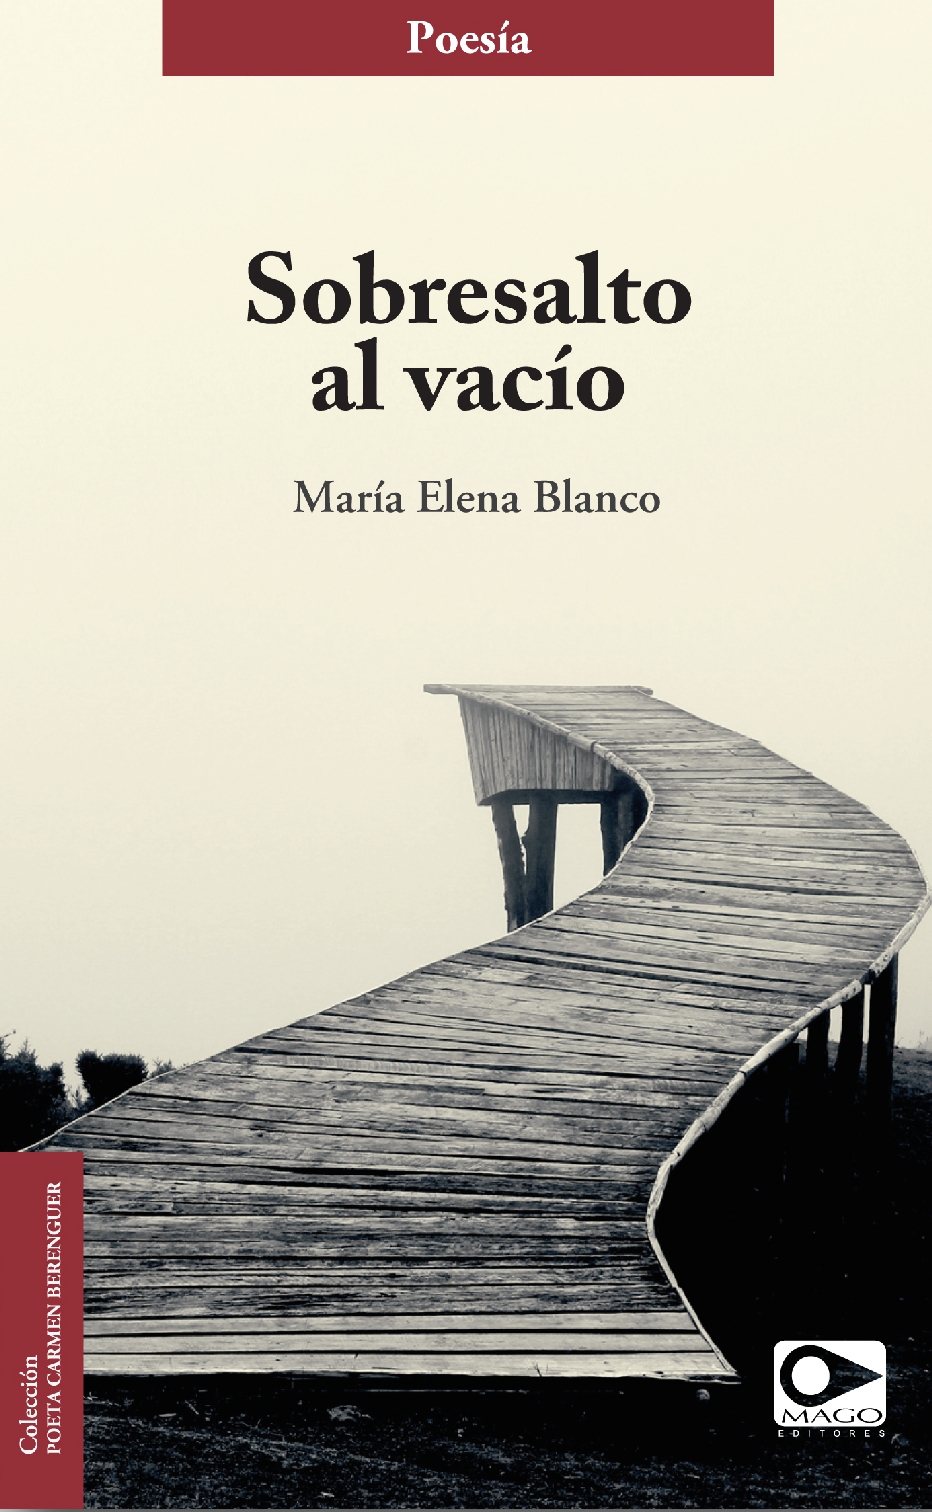 Sobresalto al vacío (Mago Editores, Santiago de Chile, 2015)